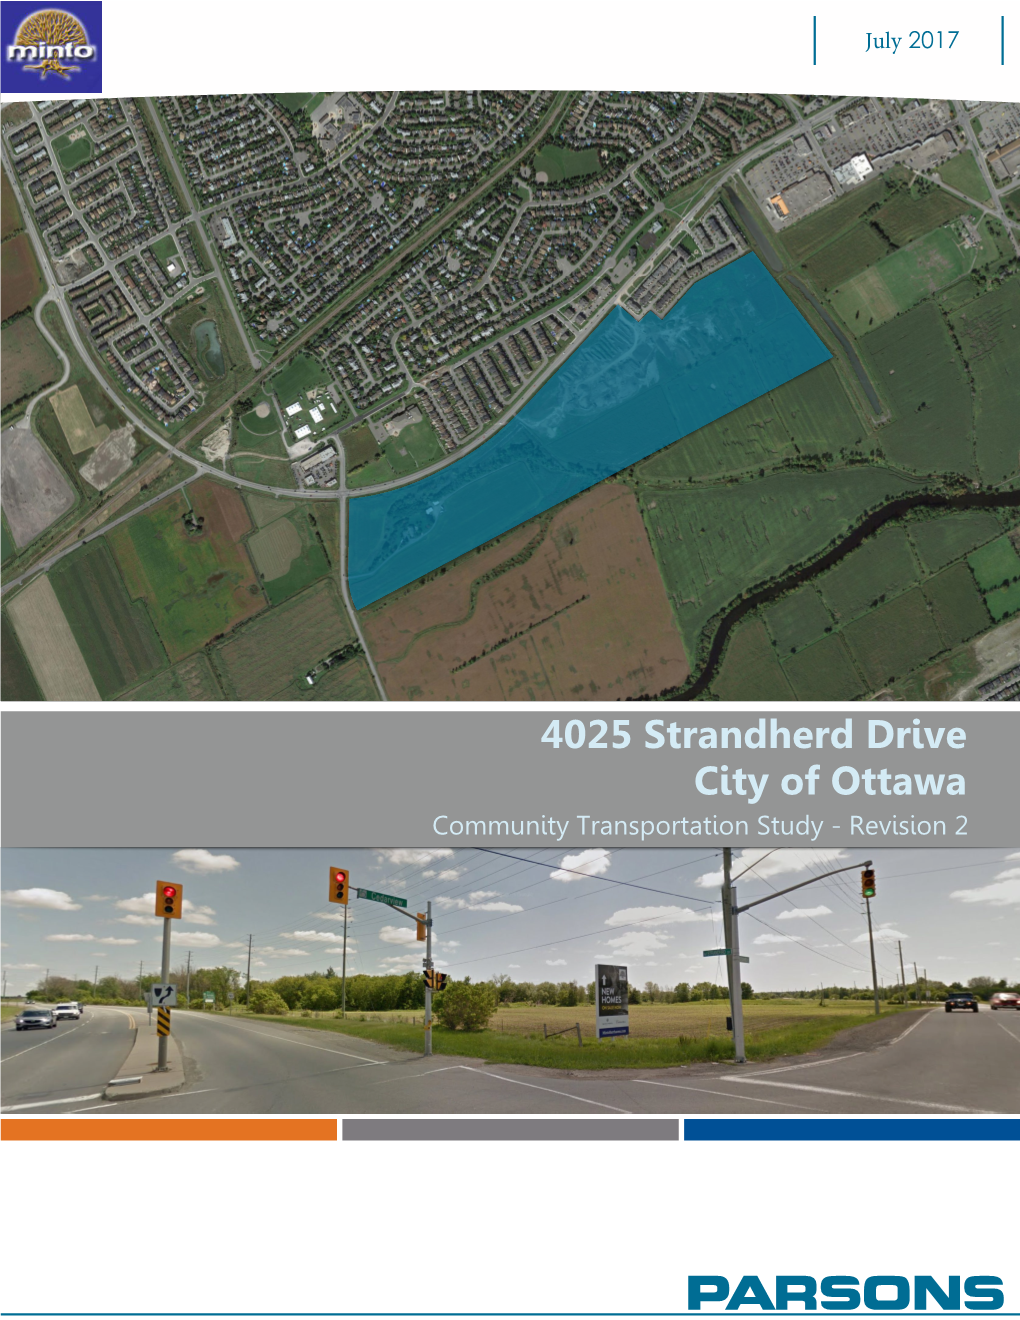 4025 Strandherd Drive City of Ottawa Community Transportation Study - Revision 2